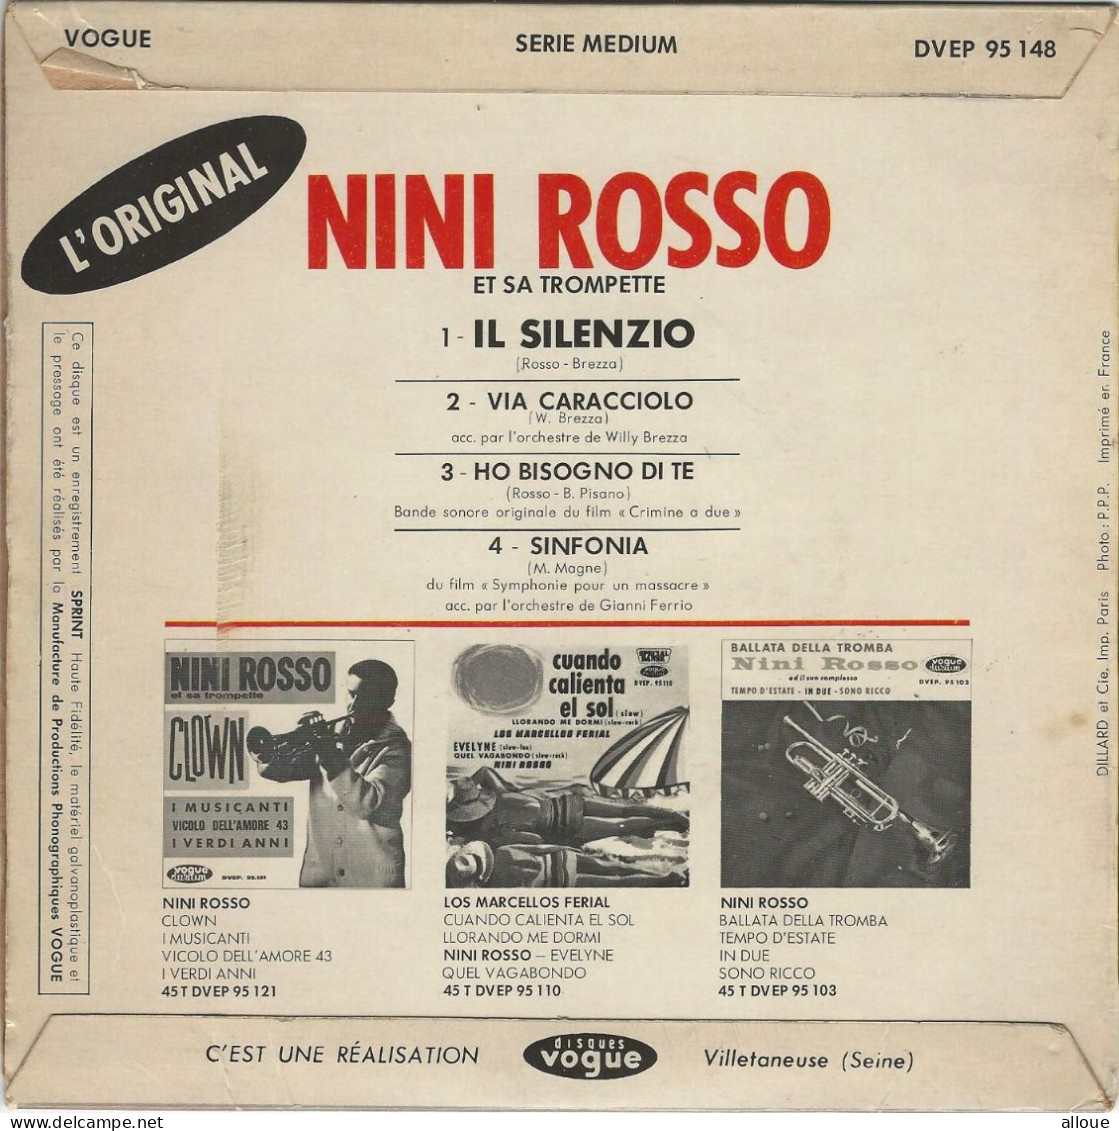 NINI ROSSO - FR EP - IL SILENZIO + 3 - Musiche Del Mondo